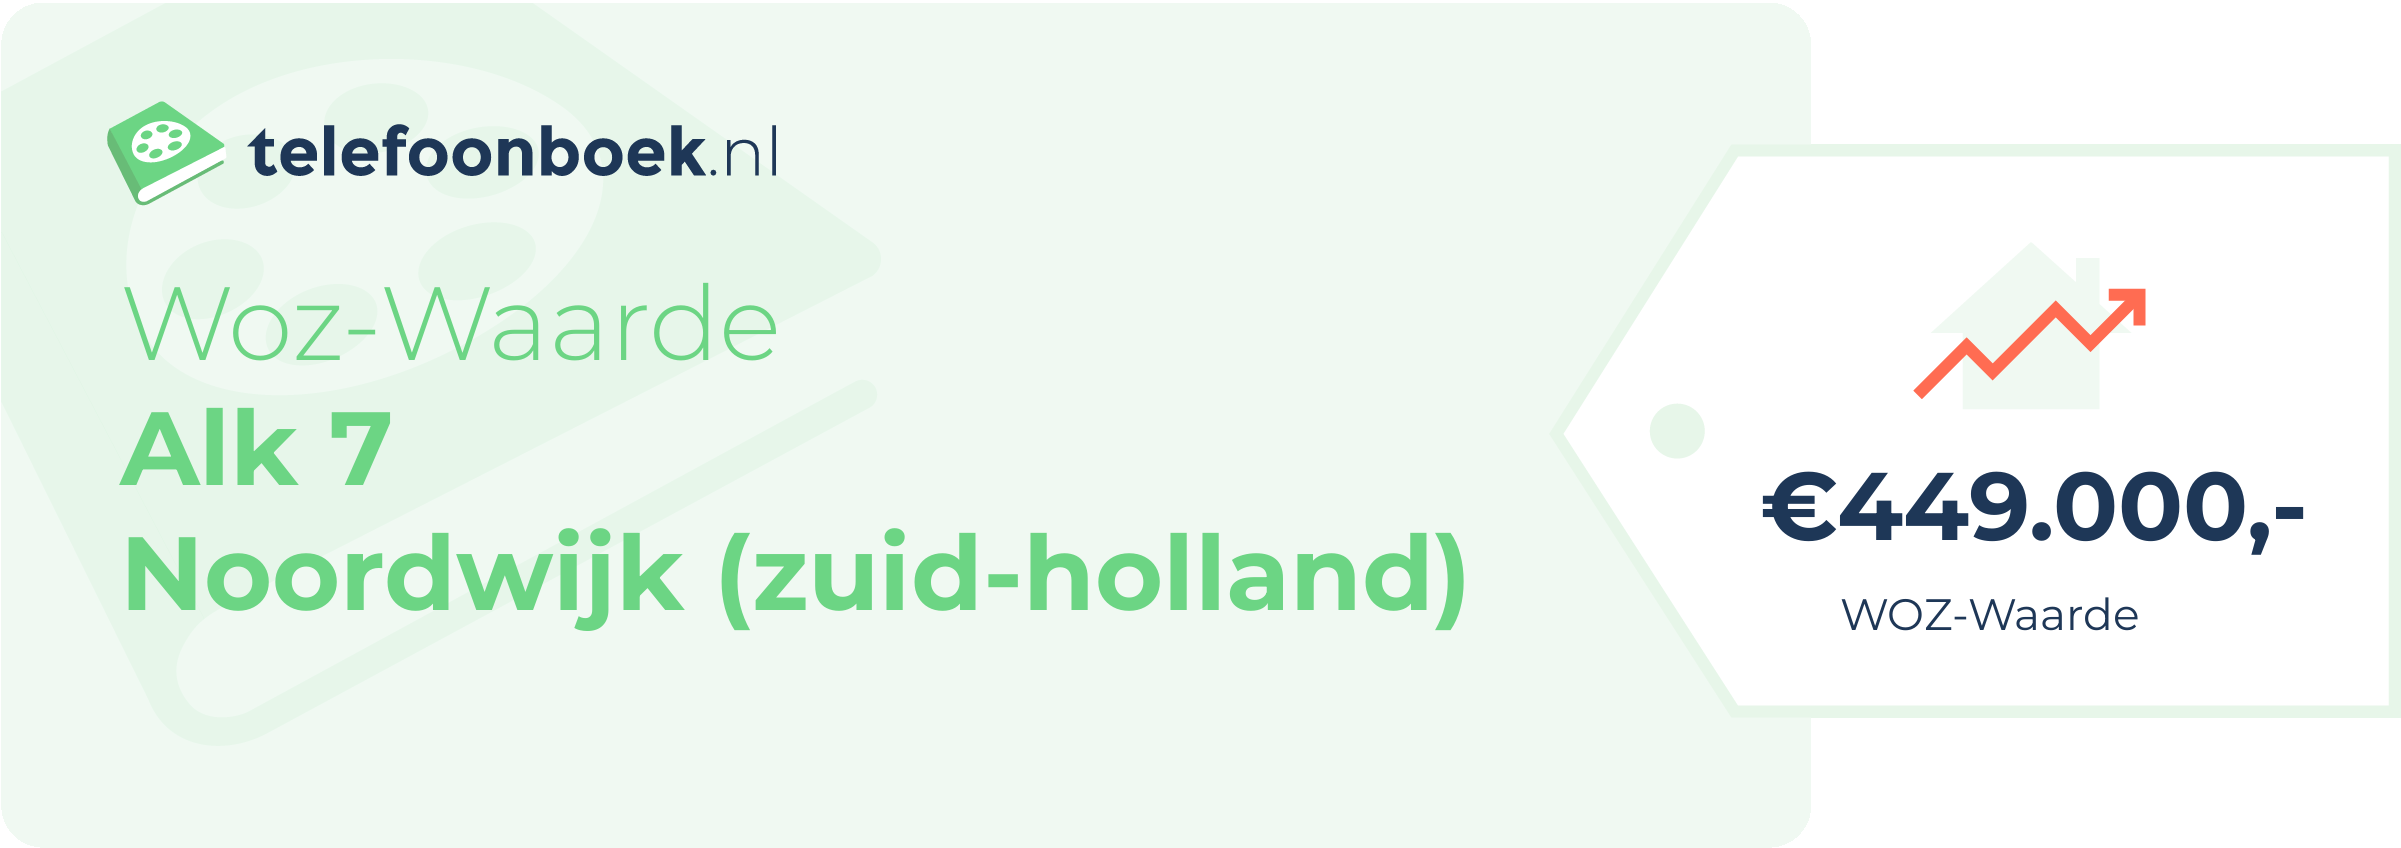 WOZ-waarde Alk 7 Noordwijk (Zuid-Holland)